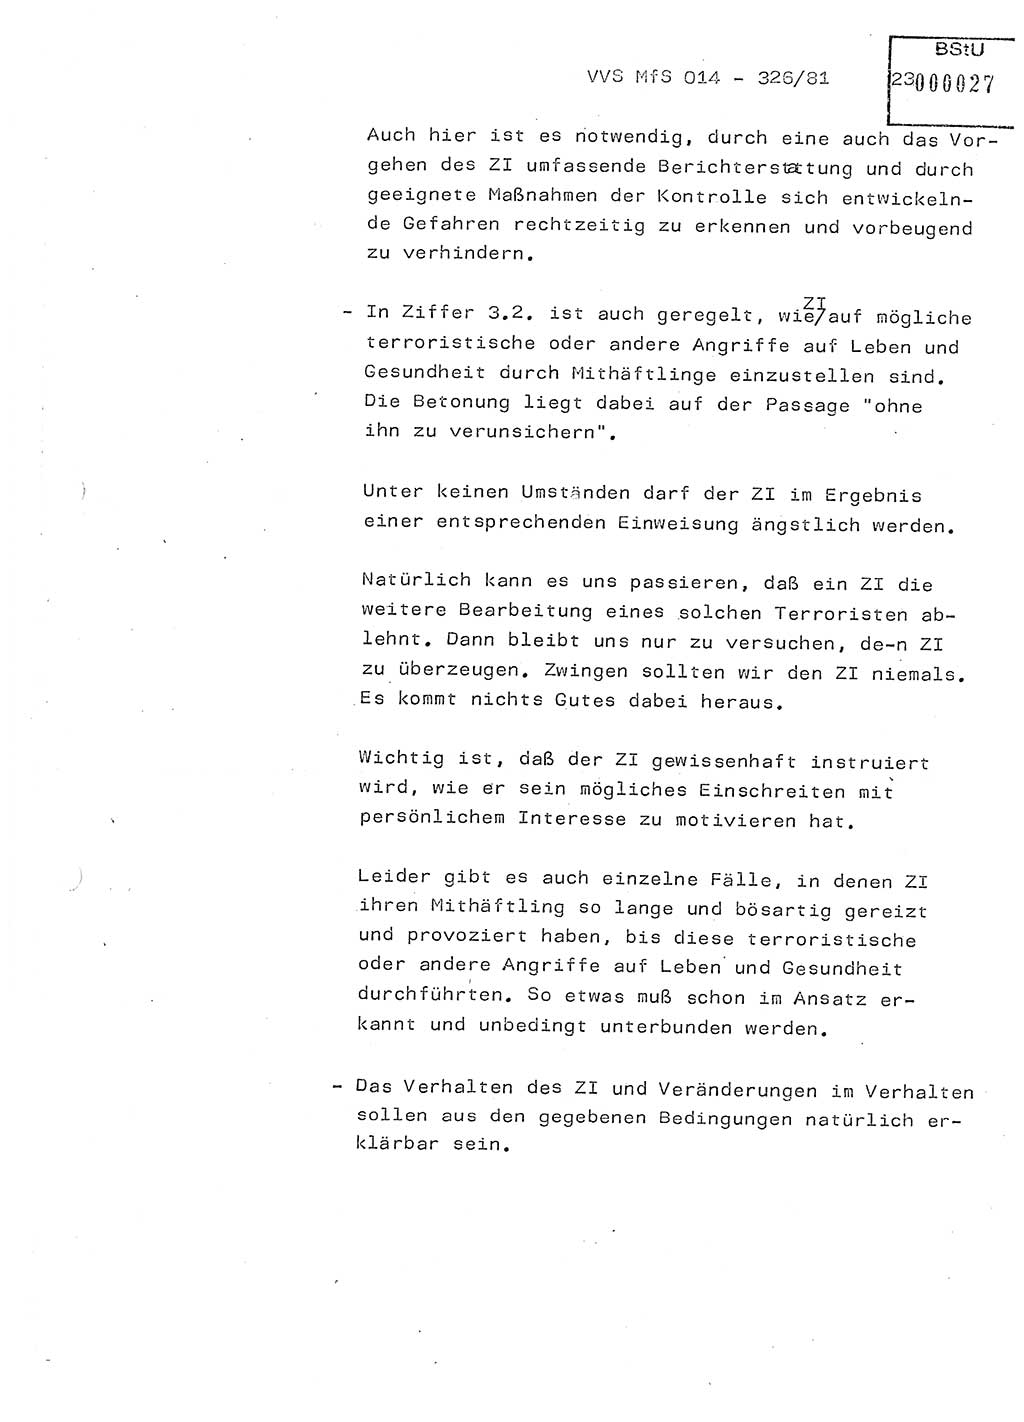 Thesen zum Einführungsvortrag für die Schulung zur Richtlinie Nr. 2/81 [zur Arbeit mit Zelleninformatoren (ZI)] des Genossen Minister (Generaloberst Erich Mielke), Ministerium für Staatssicherheit (MfS) [Deutsche Demokratische Republik (DDR)], Hauptabteilung (HA) Ⅸ, Vertrauliche Verschlußsache (VVS) 014-326/81, Berlin 1981, Seite 23 (Th. Sch. RL 2/81 MfS DDR HA Ⅸ VVS 014-326/81 1981, S. 23)